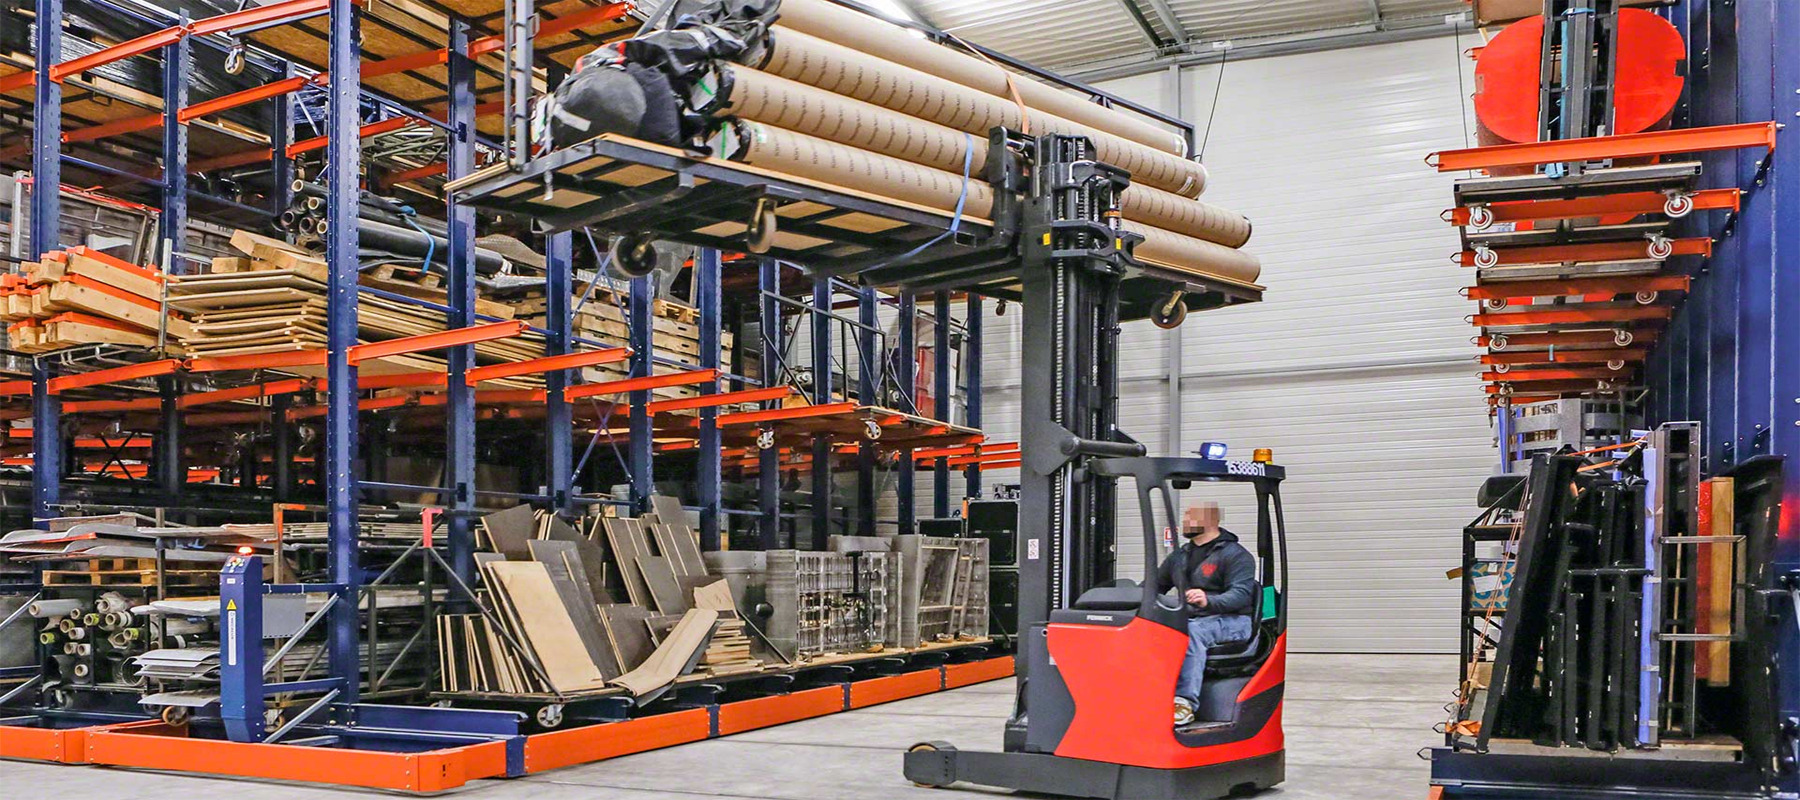 Side Loader Forklift in a Warehouse